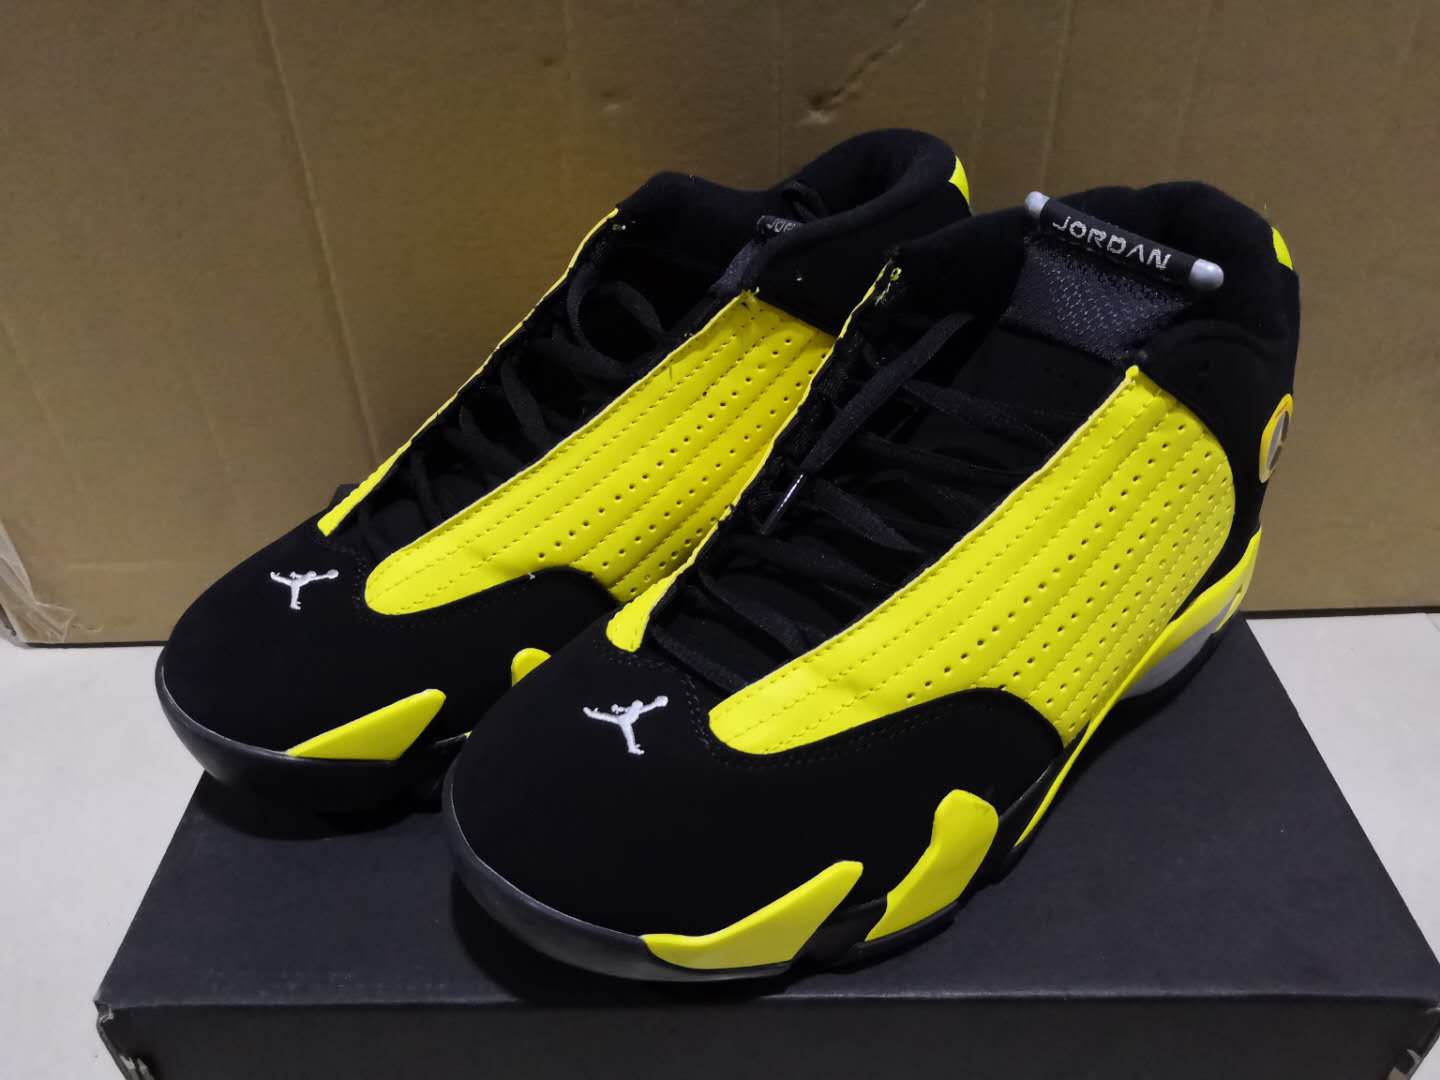 Cheap 2019 Air Jordan Retro 14 Sneakers For Men in 208267, cheap Jordan14, only $65!